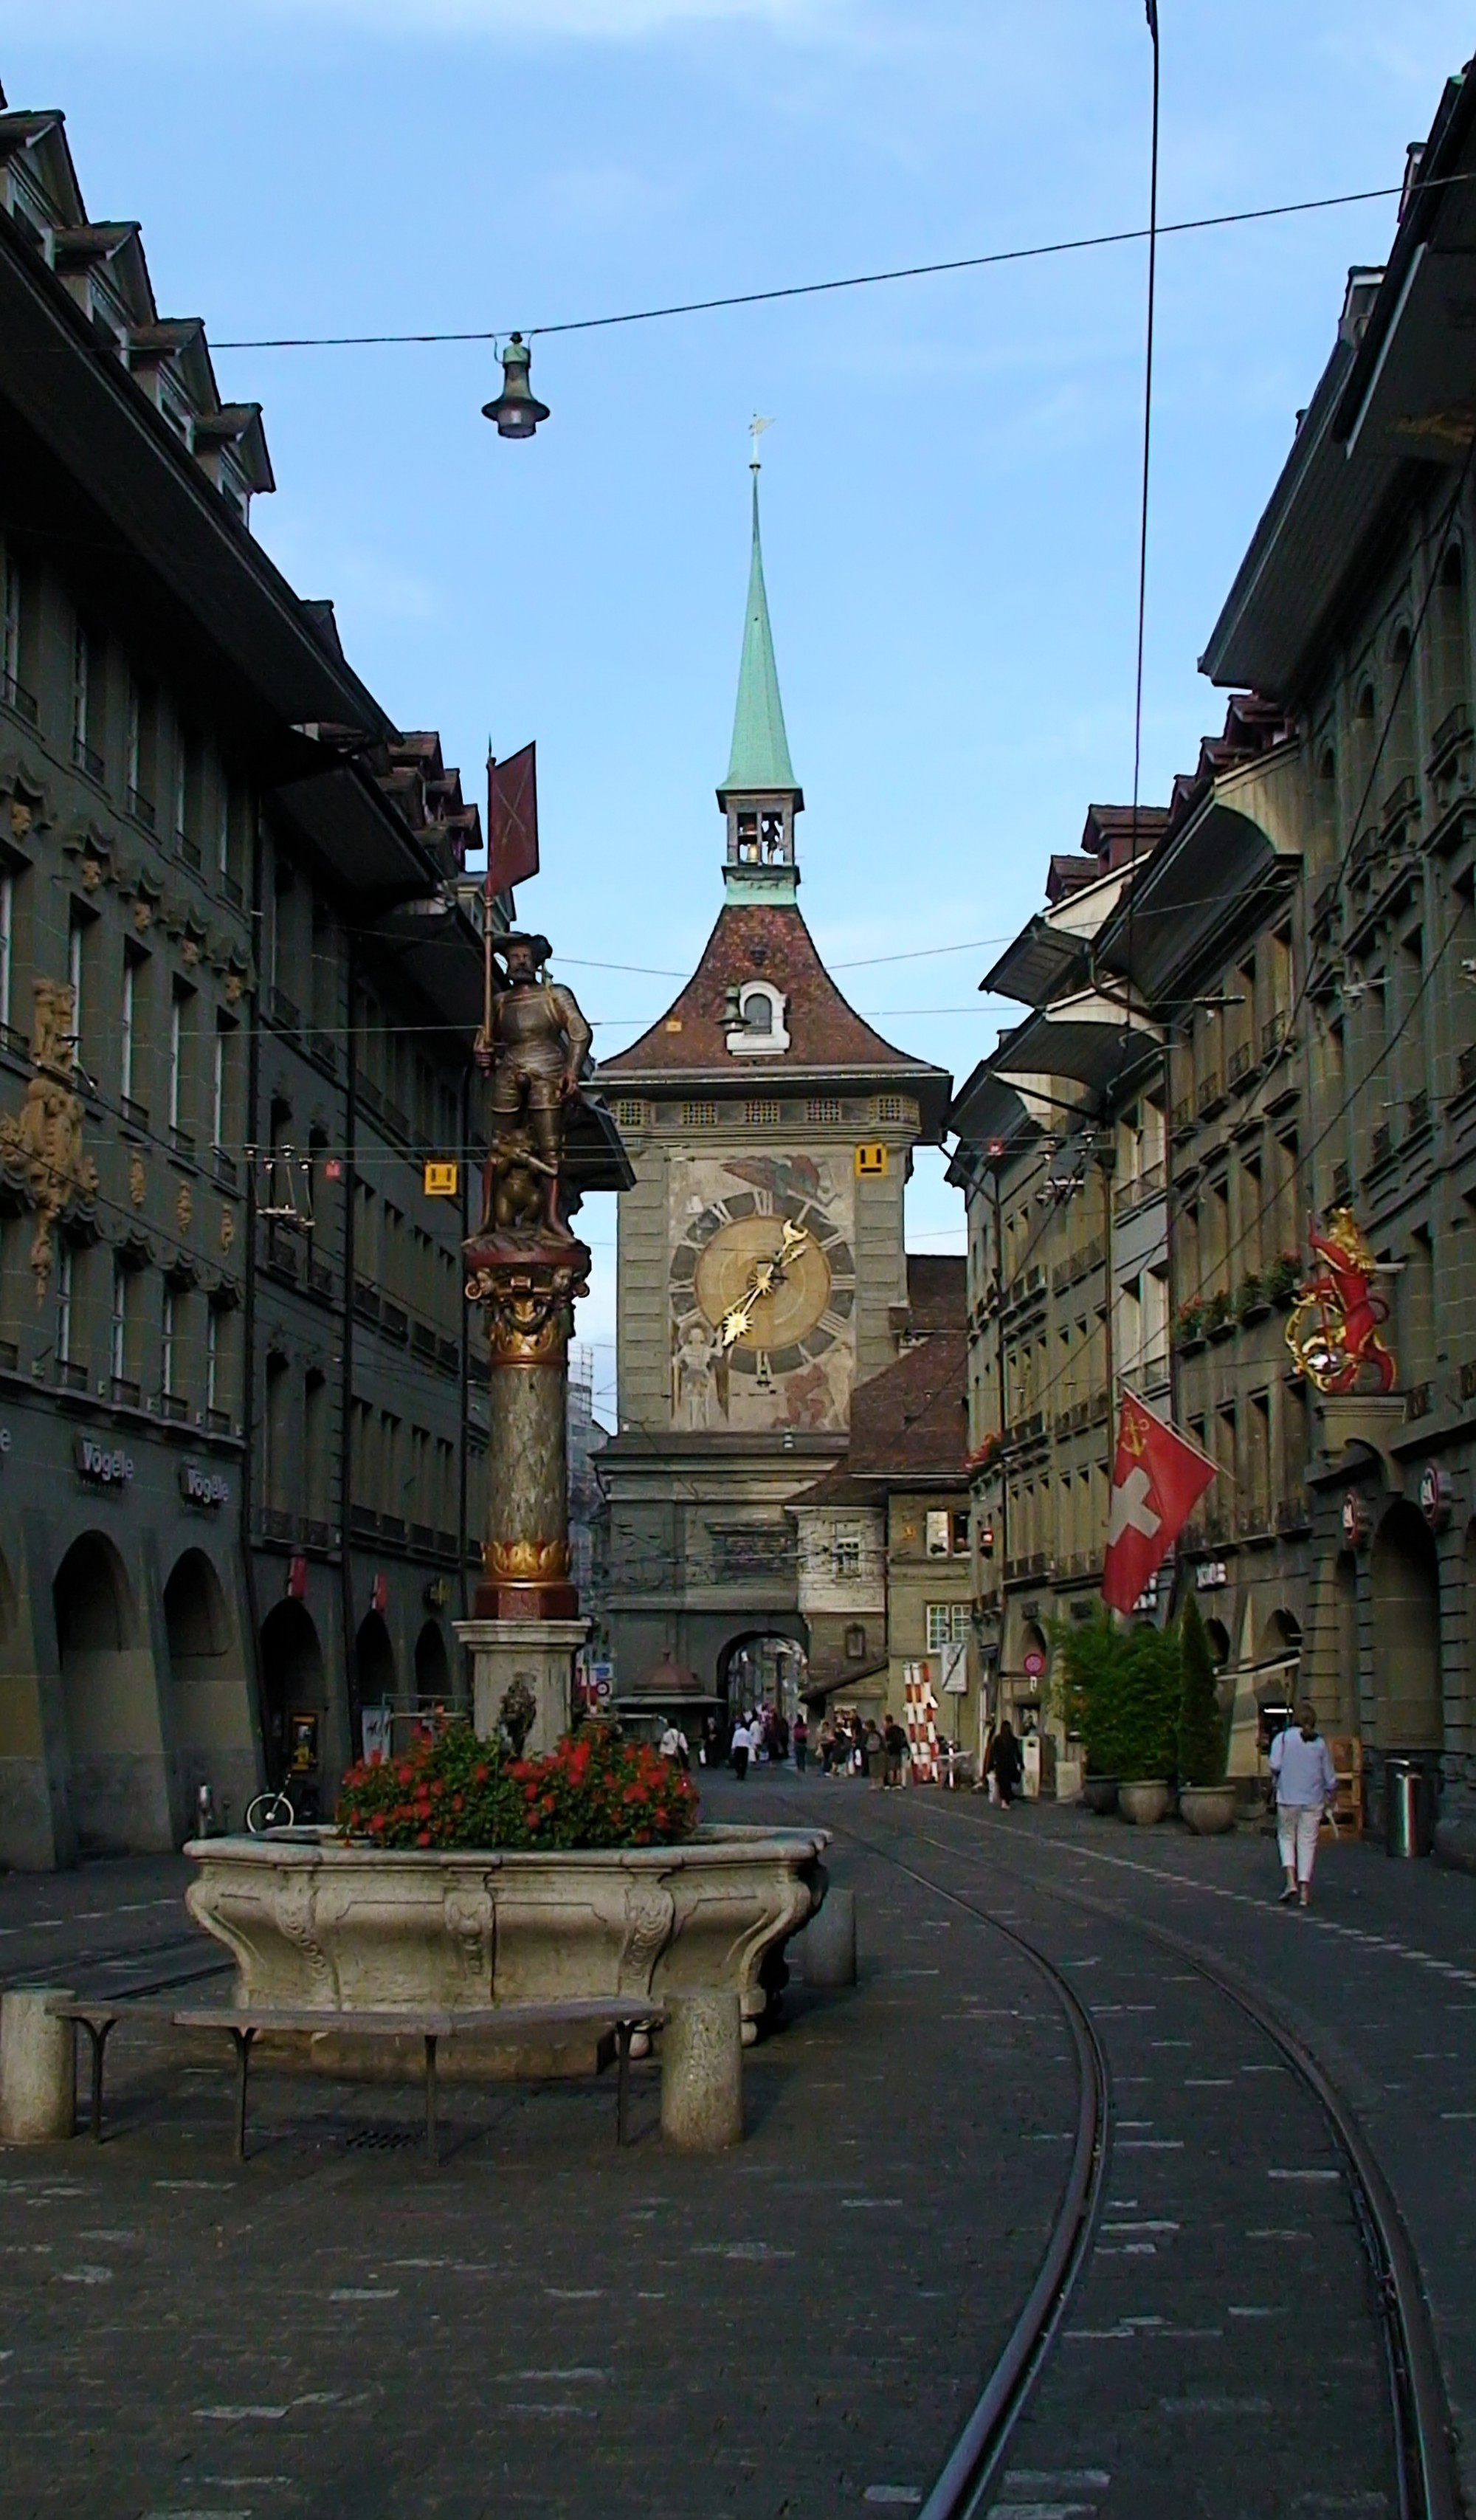 Цитглогге, или Часовая башня — часовая башня средневекового происхождения с астрономическими часами в исторической части Берна. Цитглогге возникла предположительно между 1218 и 1220 годами как оборонительная башня на западном конце центральной городской улицы основанного в 1191 году Берна. Башня с двигающимися механическими фигурами и астрономическими часами является одной из старейших часовых башен Швейцарии. Фонтан Шютценбруннен — небольшой фонтан, построенный между 1527-1543 годами, увенчан статуей стрелка, держащего знамя, и фигурой медвежонка с ружьём.<br/>
